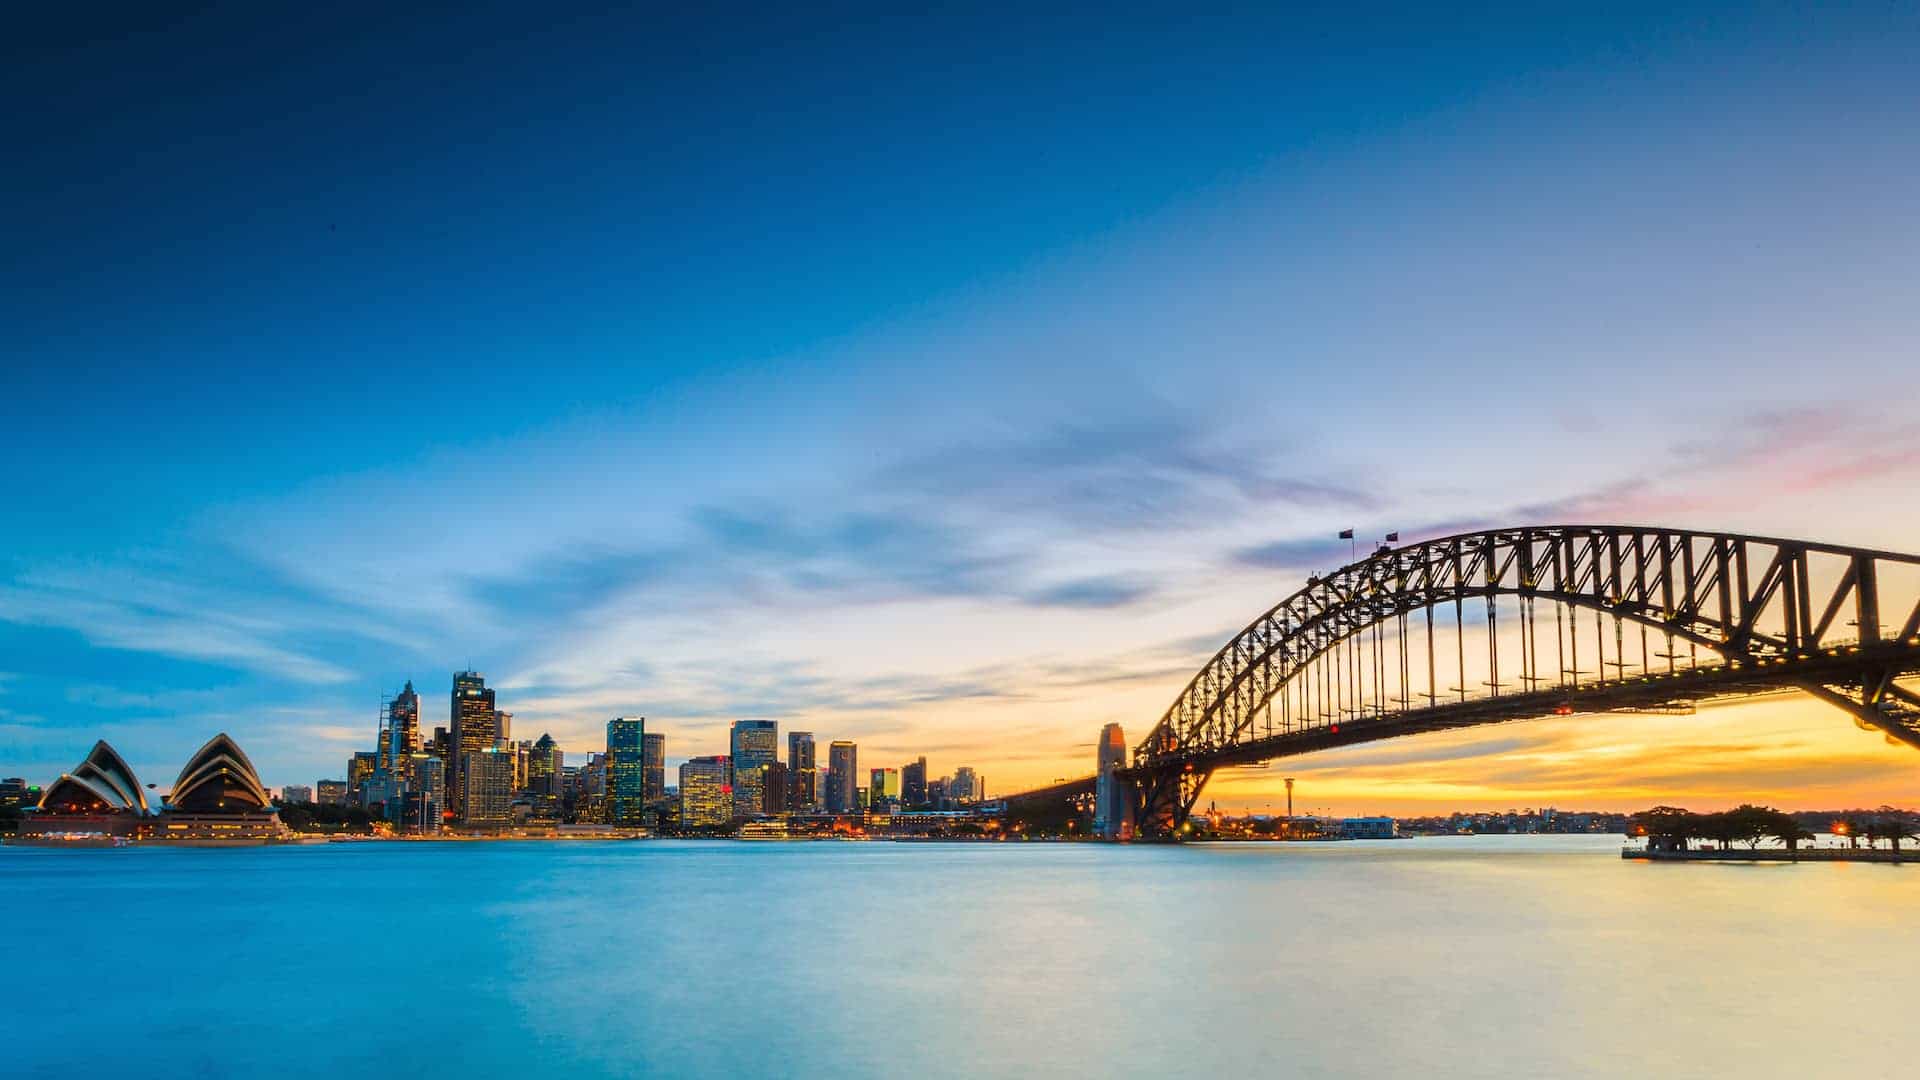 Trải nghiệm miễn phí tại Sydney - Cầu cảng Sydney